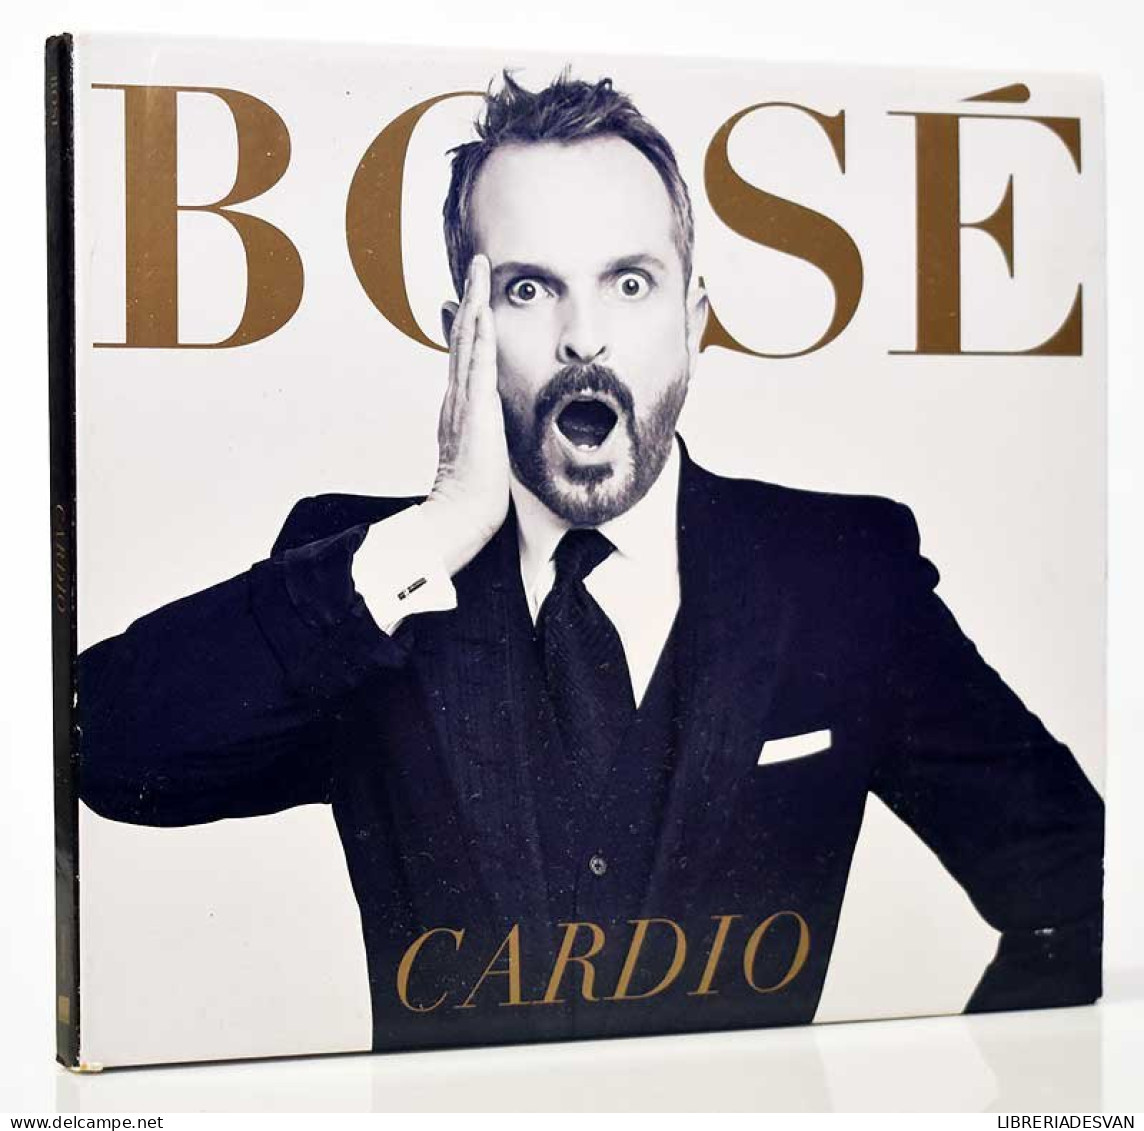 Bosé - Cardio. CD - Disco & Pop